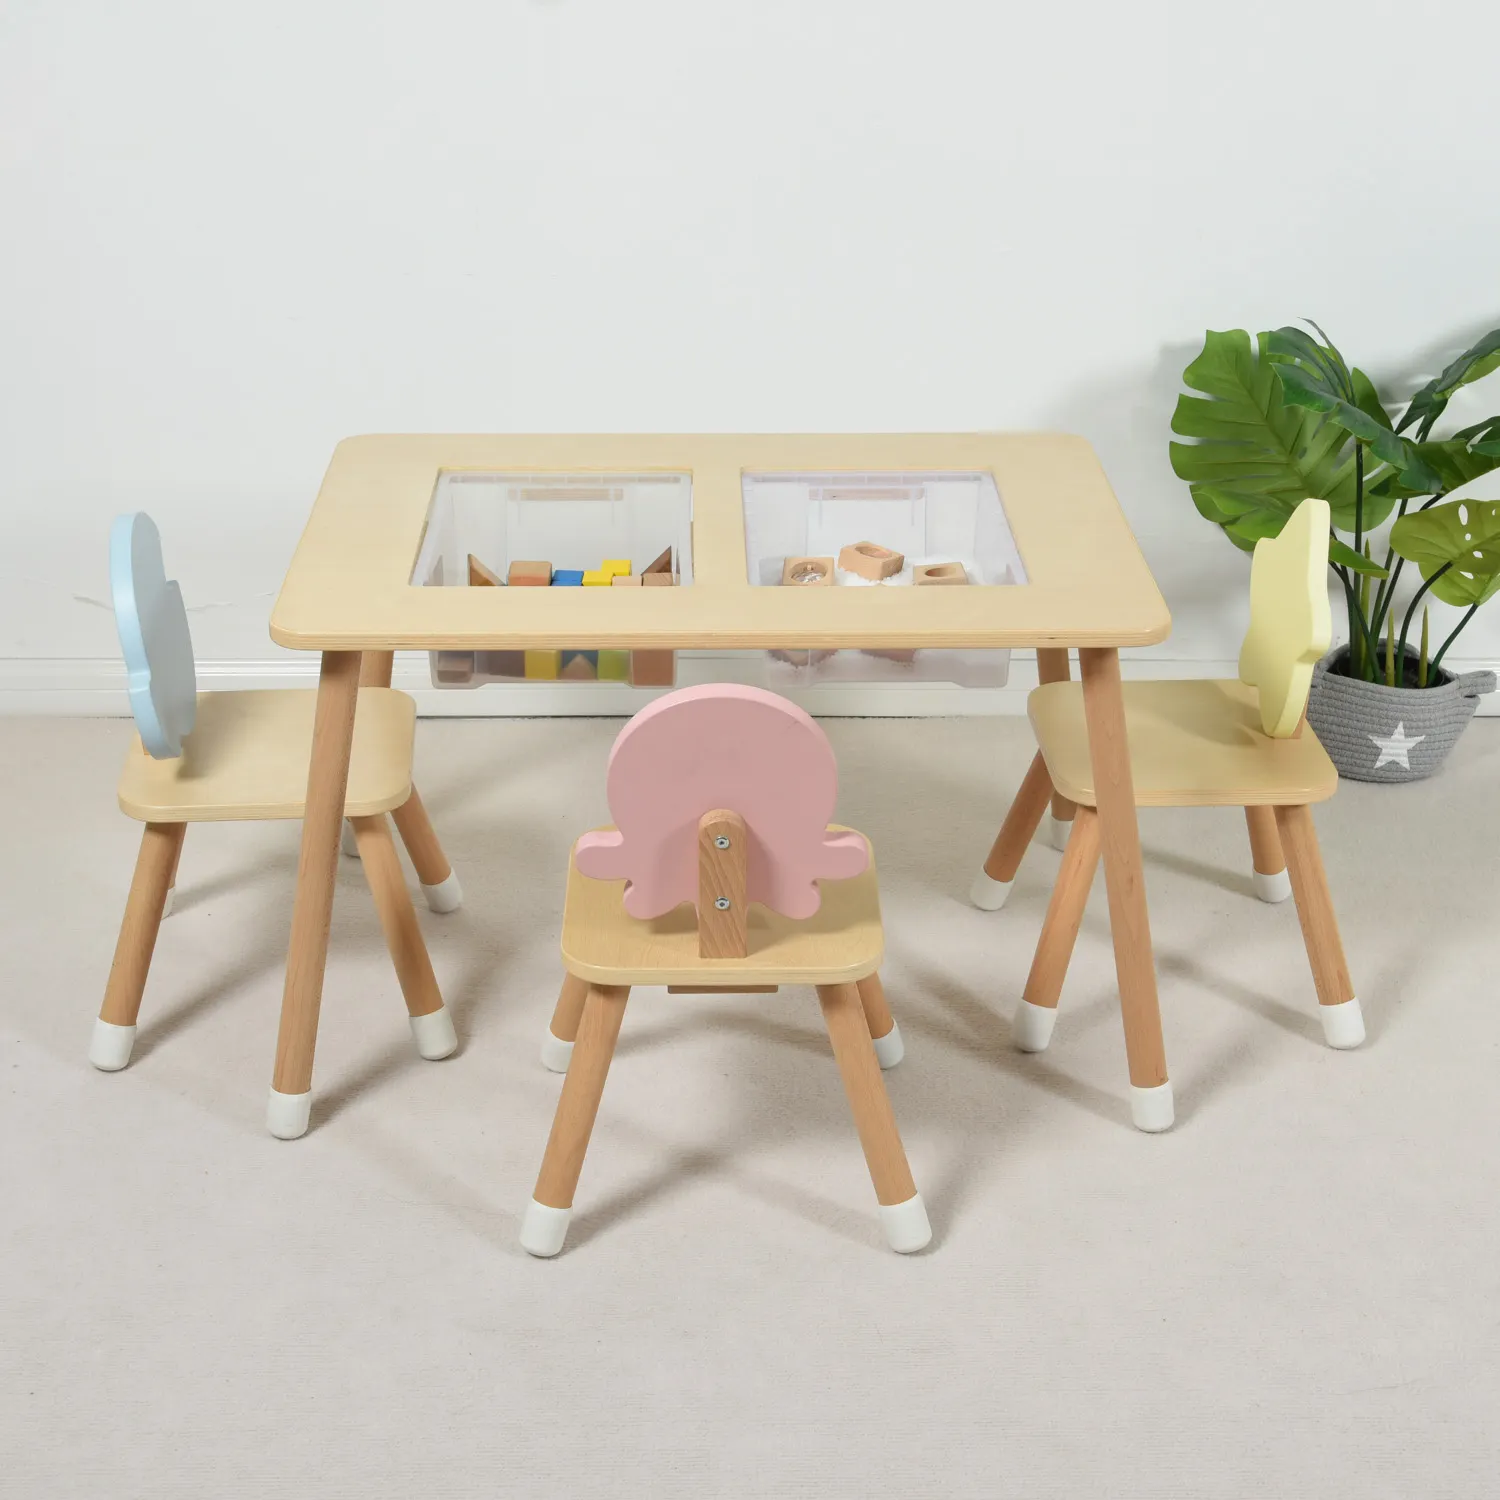 幼児木製テーブルベビーマルチアクティビティプレイレゴテーブル2つの収納ボックスビンキッズ感覚サンドウォーターテーブル子供用